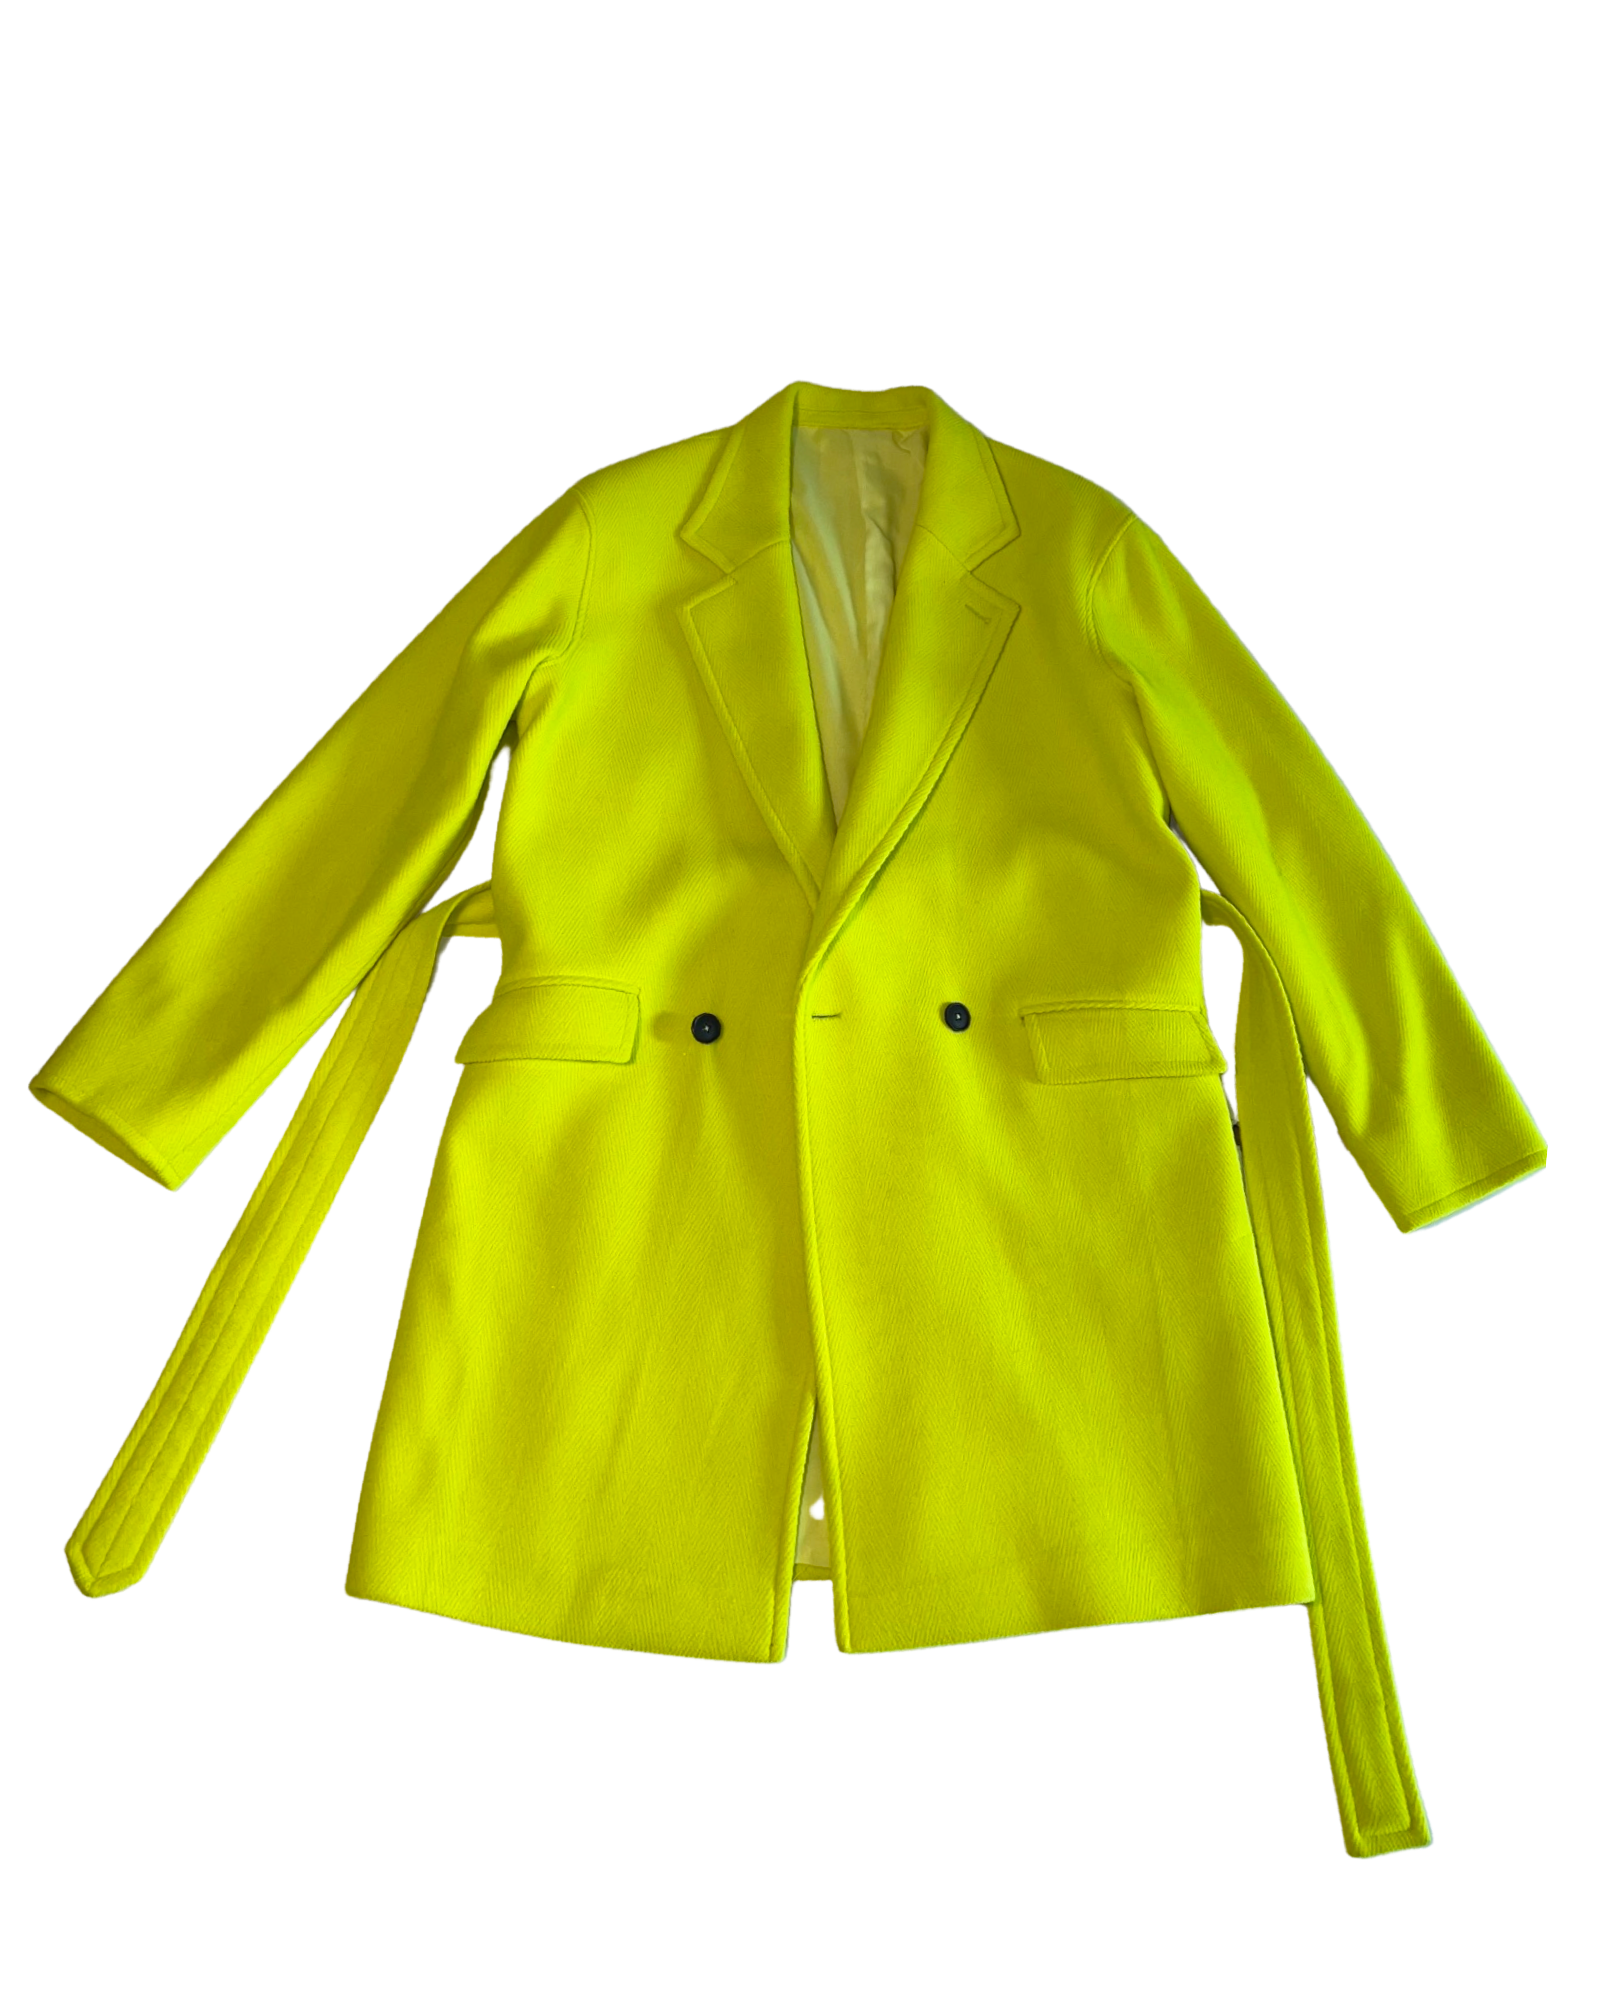 Neon Green oversized coat